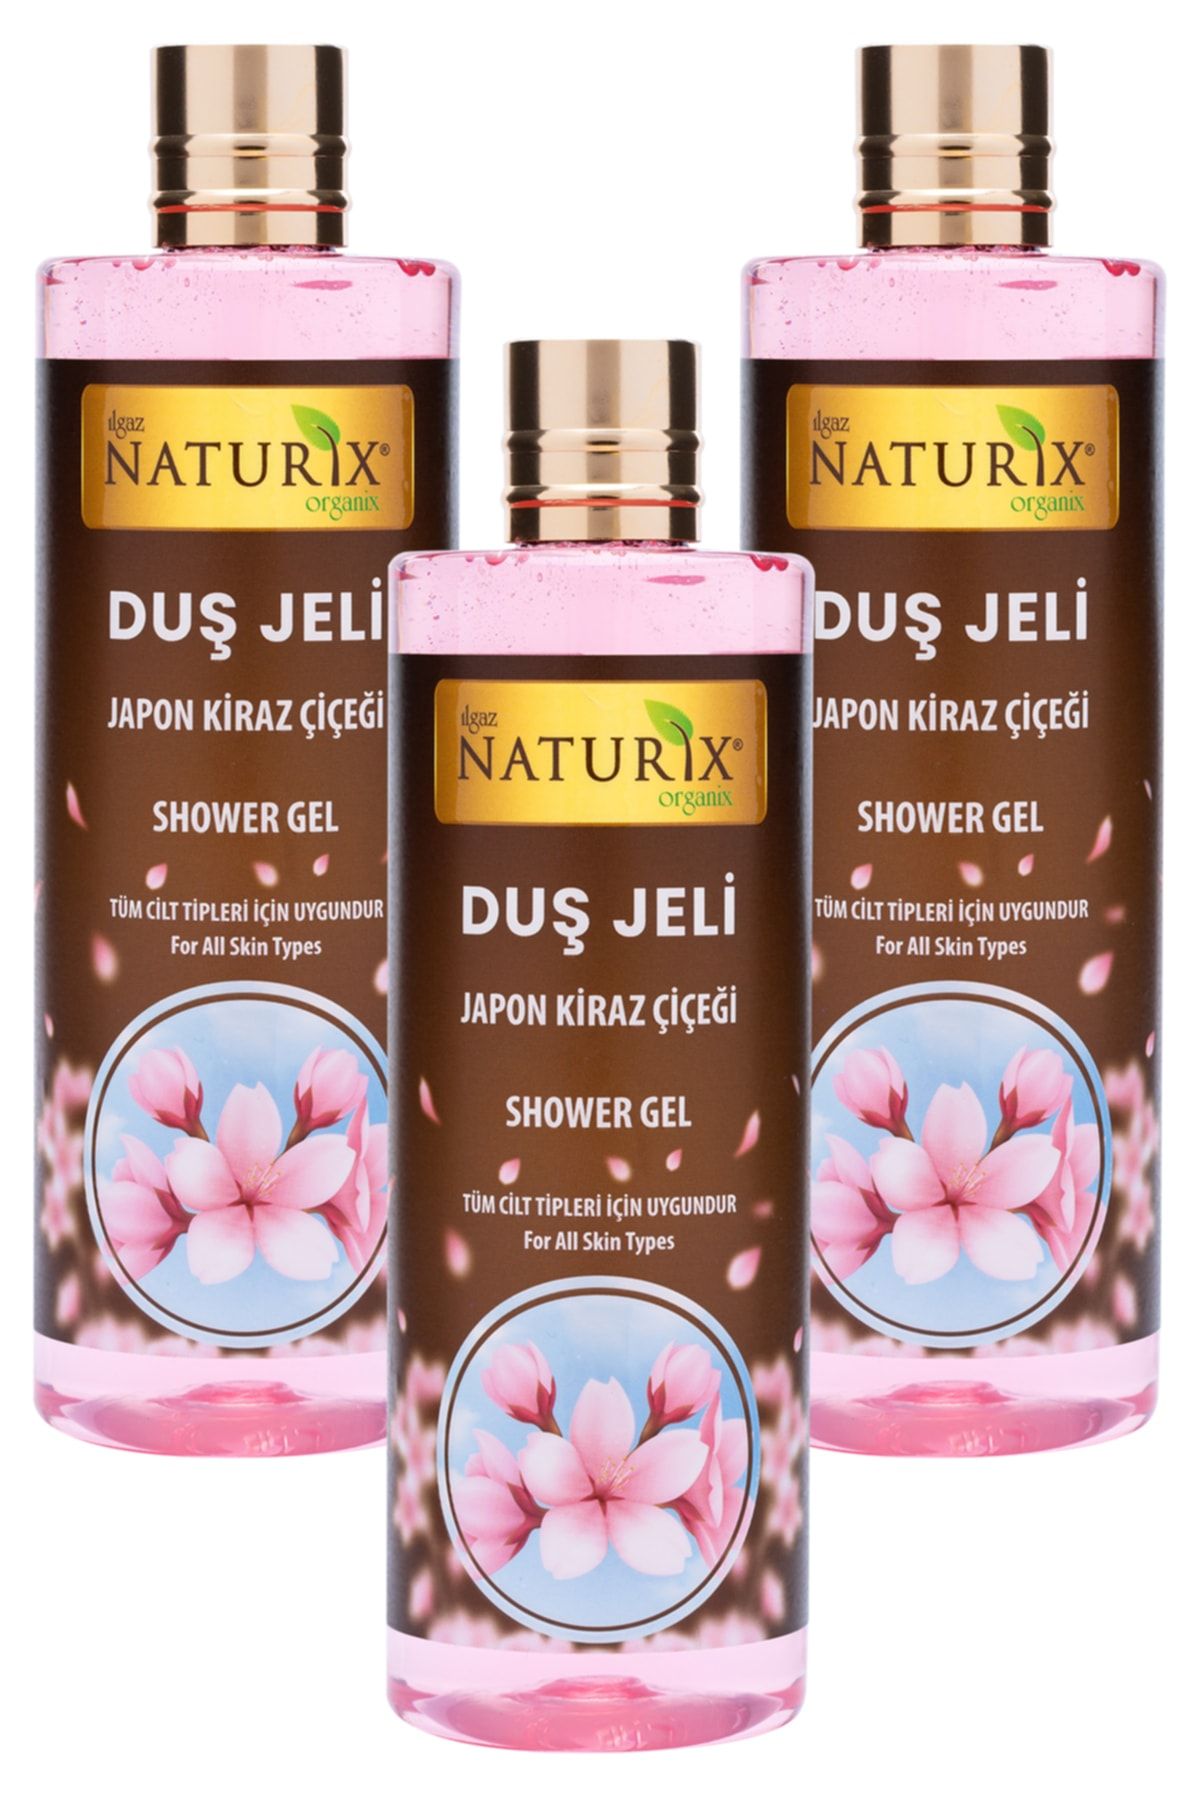 Naturix Aroma Terapi Duş Jeli Japon Kiraz Çiçeği Duş Jeli Kalıcı Kokulu Banyo Jeli 400 ml 3'lü Banyo Seti